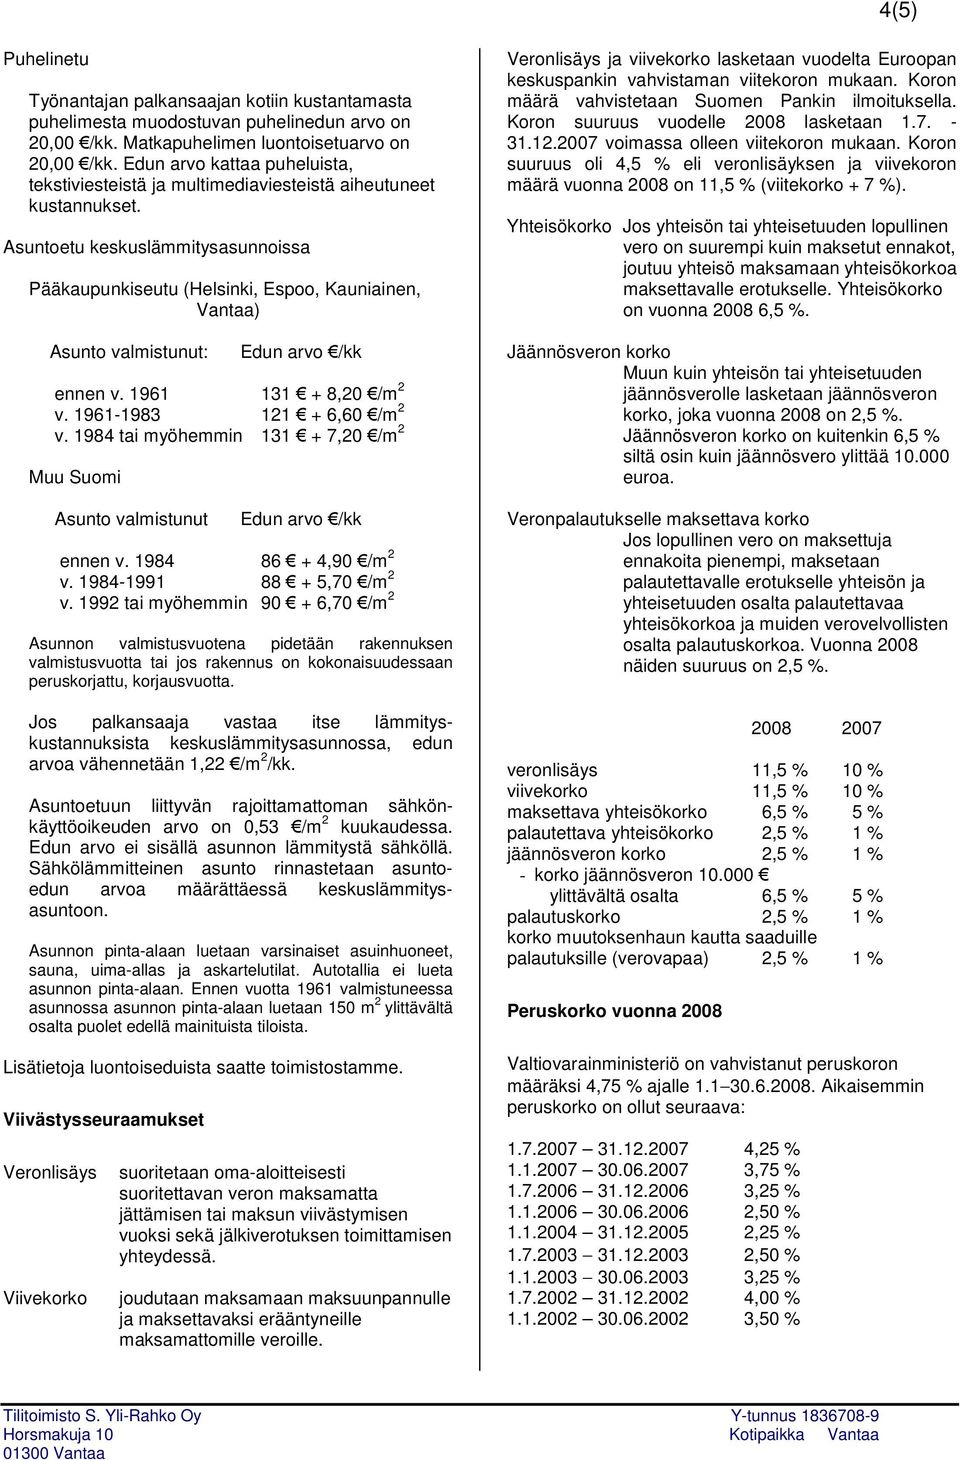 Asuntoetu keskuslämmitysasunnoissa Pääkaupunkiseutu (Helsinki, Espoo, Kauniainen, Vantaa) Asunto valmistunut: Edun arvo /kk ennen v. 1961 131 + 8,20 /m 2 v. 1961-1983 121 + 6,60 /m 2 v.